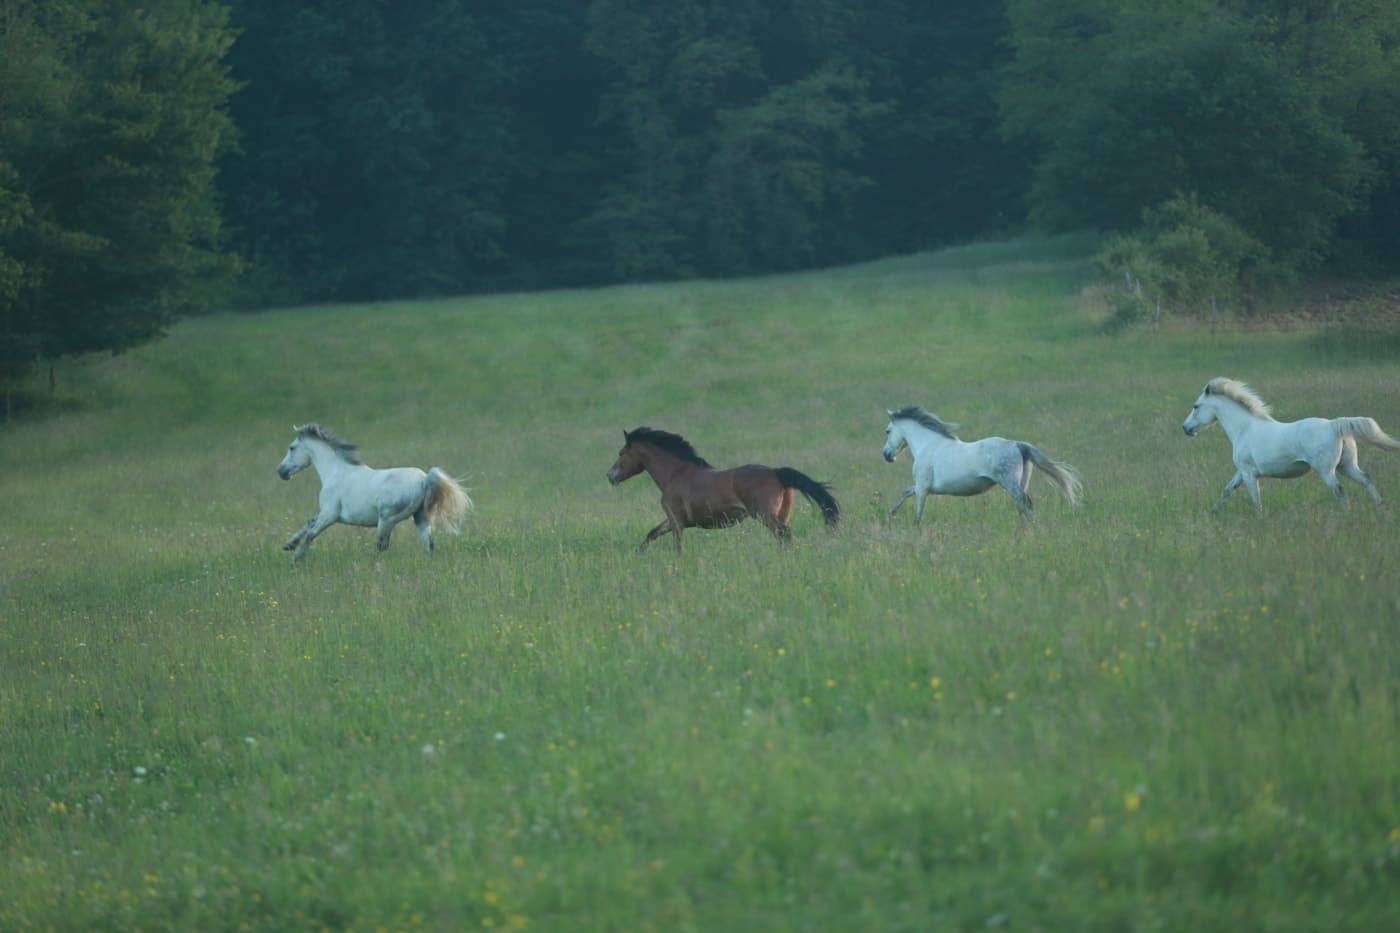 Lire la suite à propos de l’article « Vacances de rêve à poney », les colonies de vacances